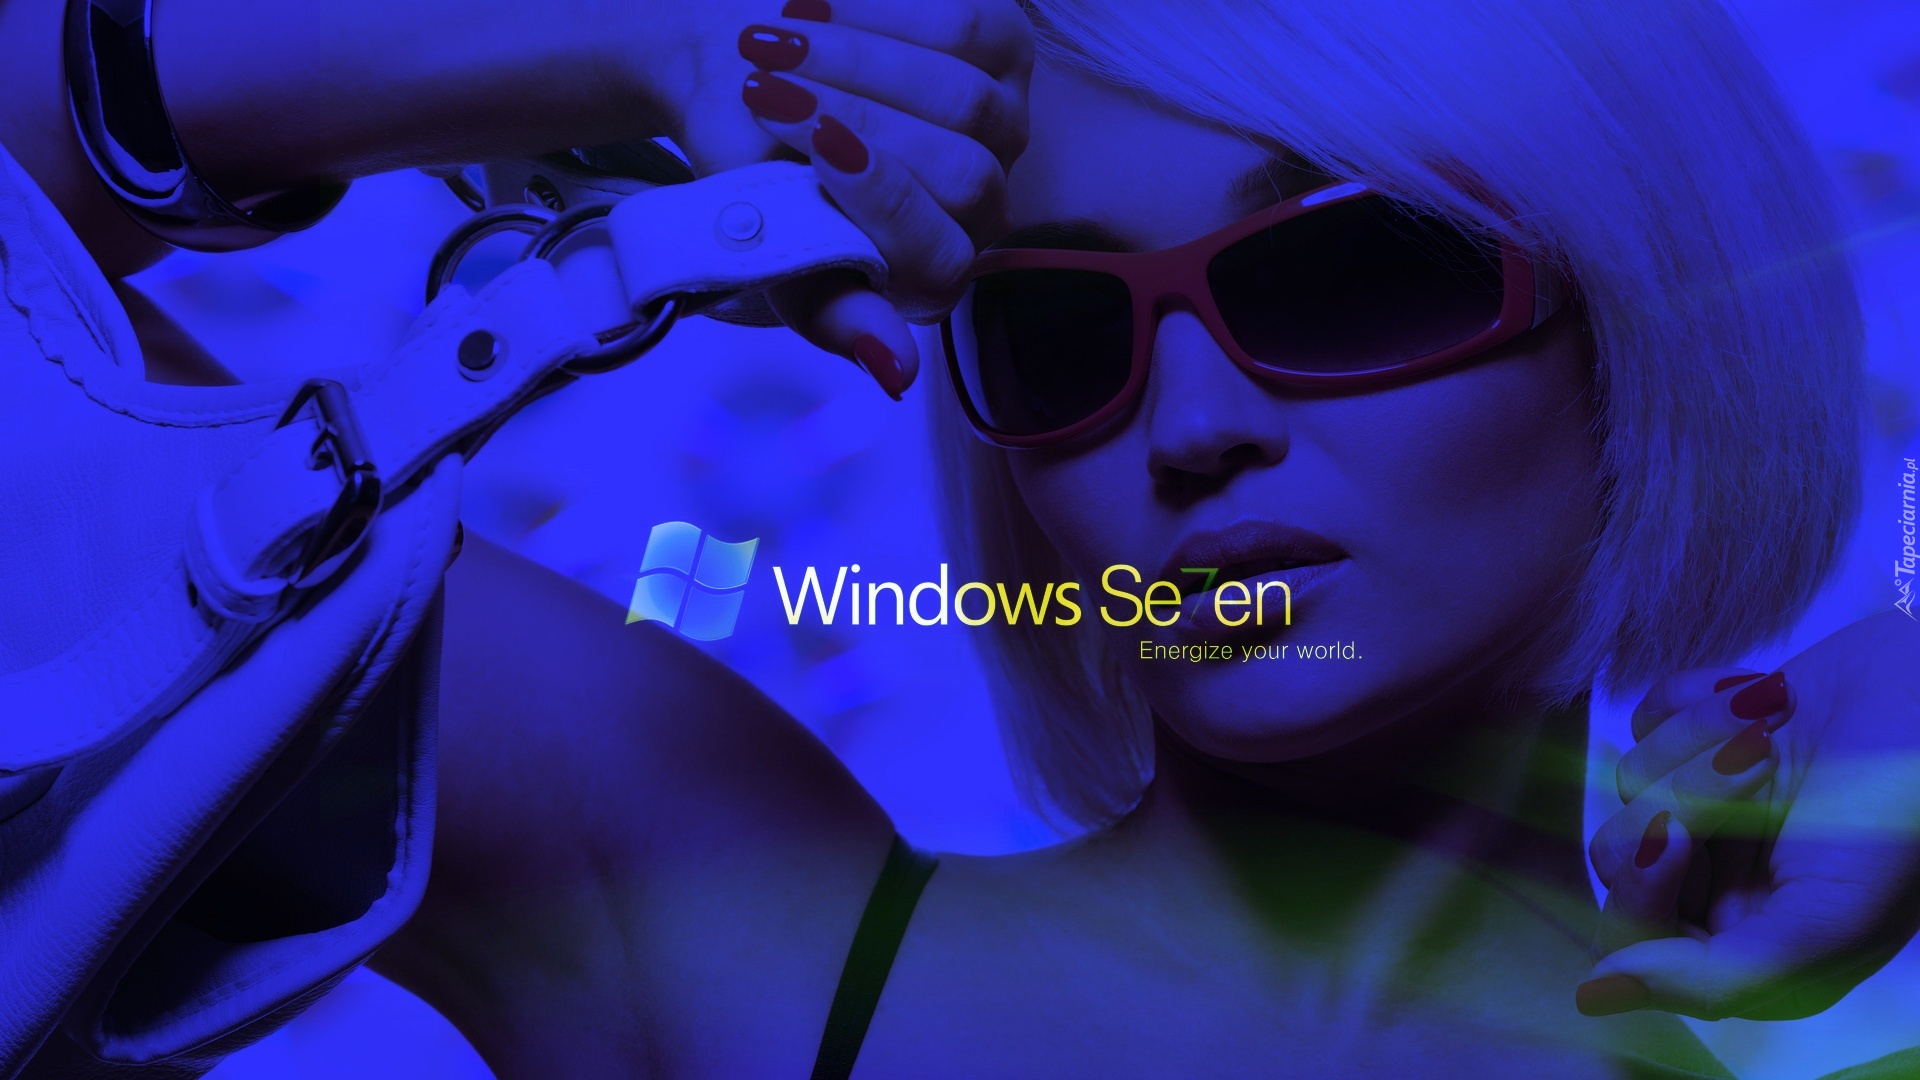 Kobieta, Logo, Windows 7